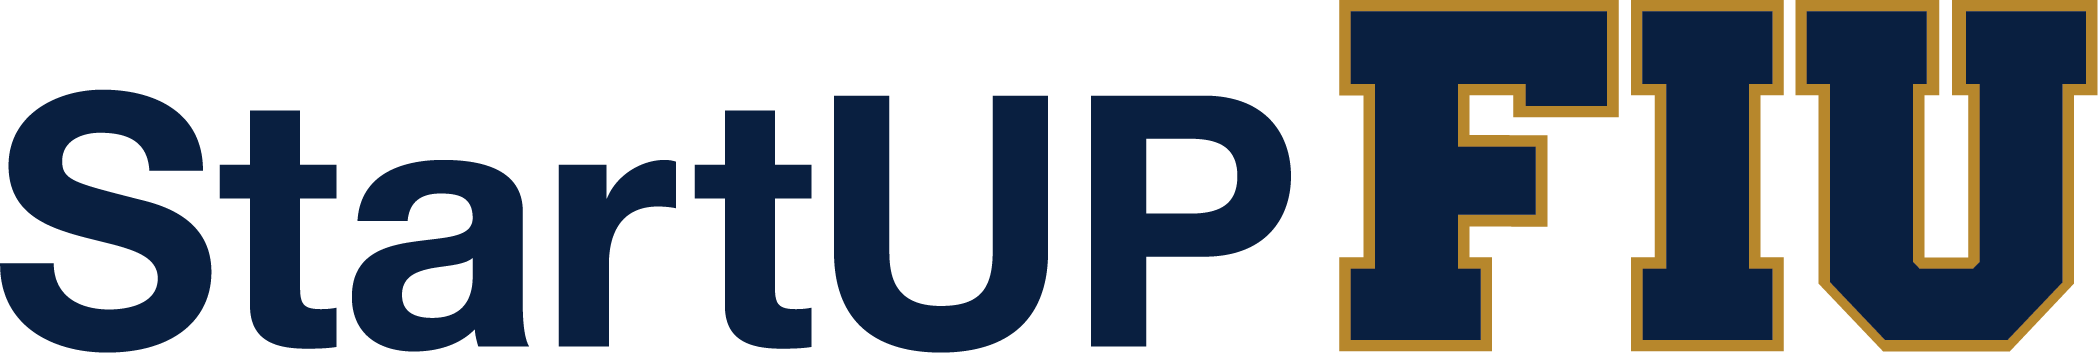 startup-logo.png